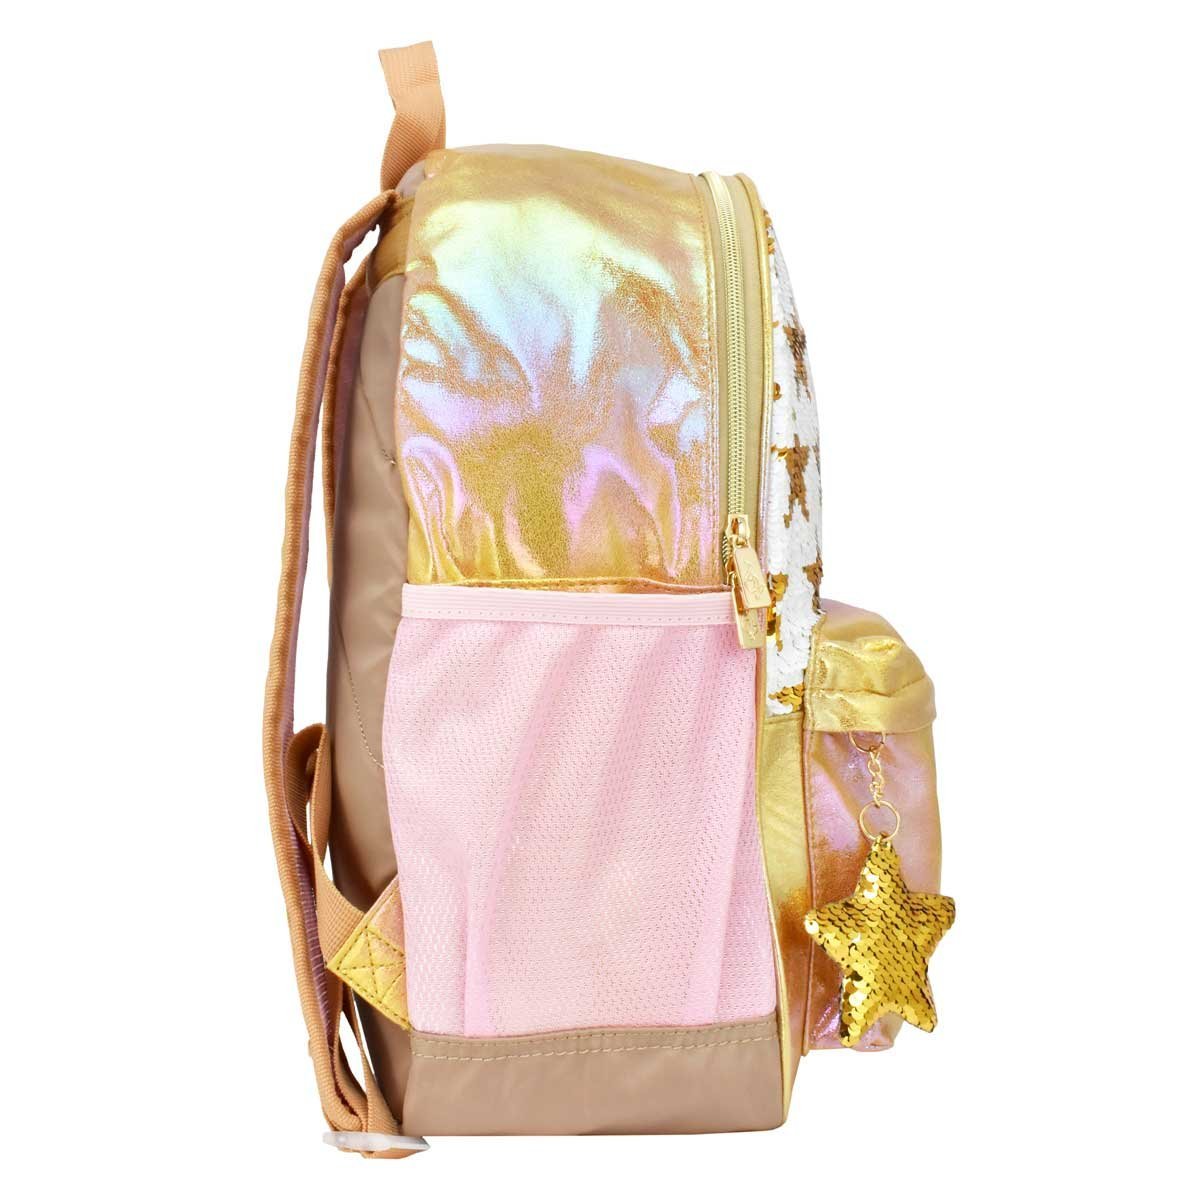 Backpack Dorada con Estrellas Baby Phat